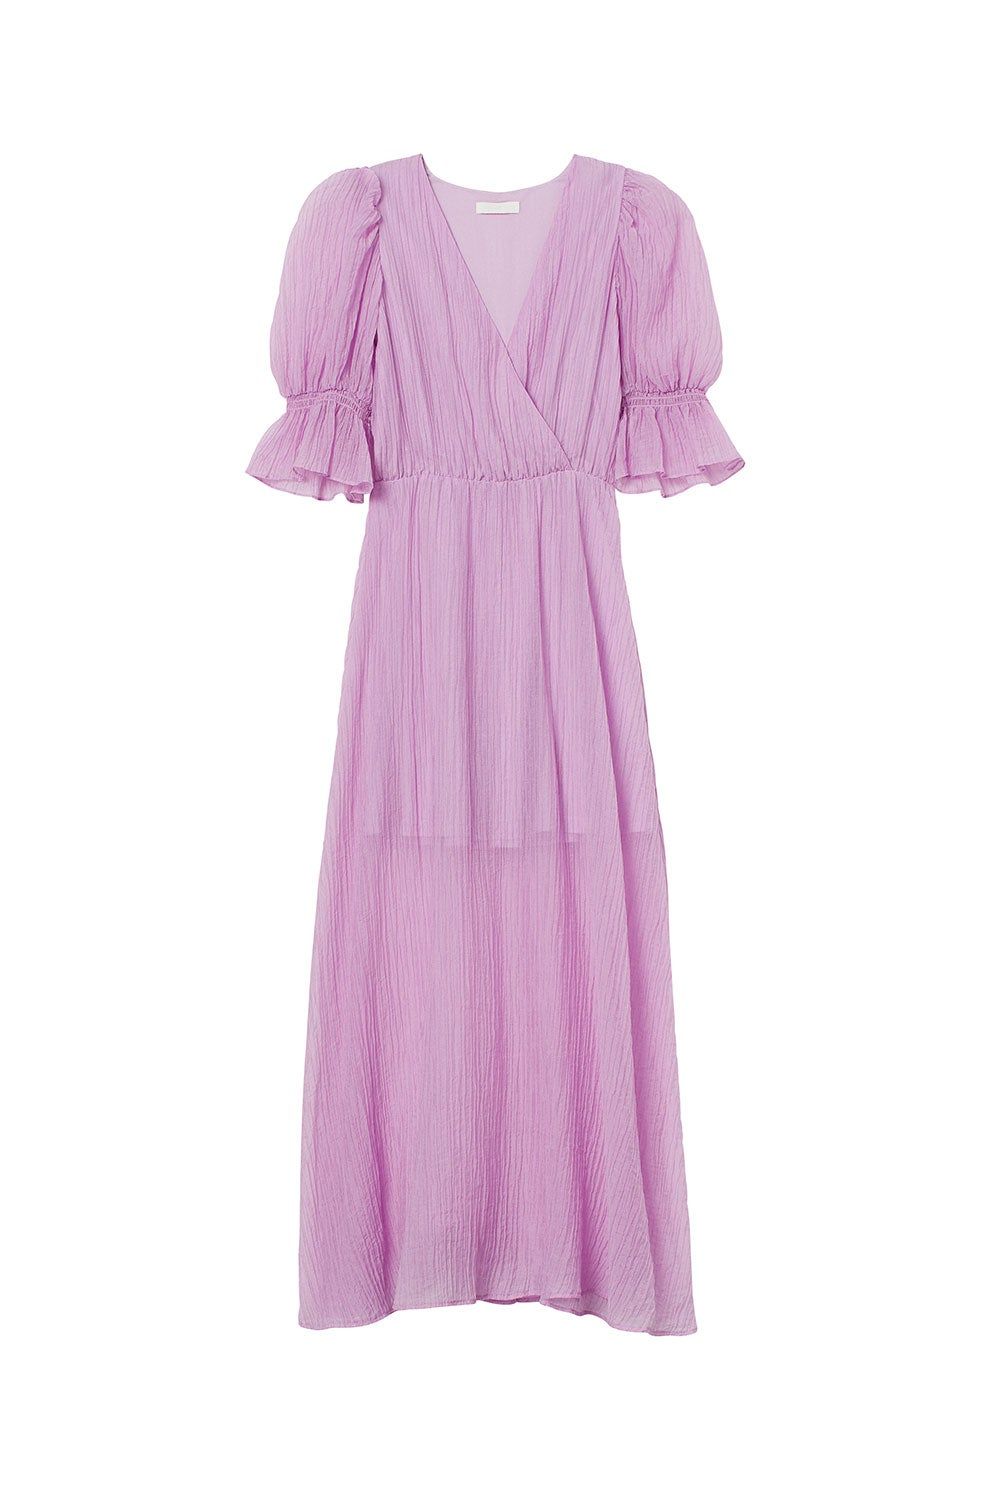 Vestido malva largo de la colección #ConsciousDresses de H&amp;M. (Precio: 39,99 euros)